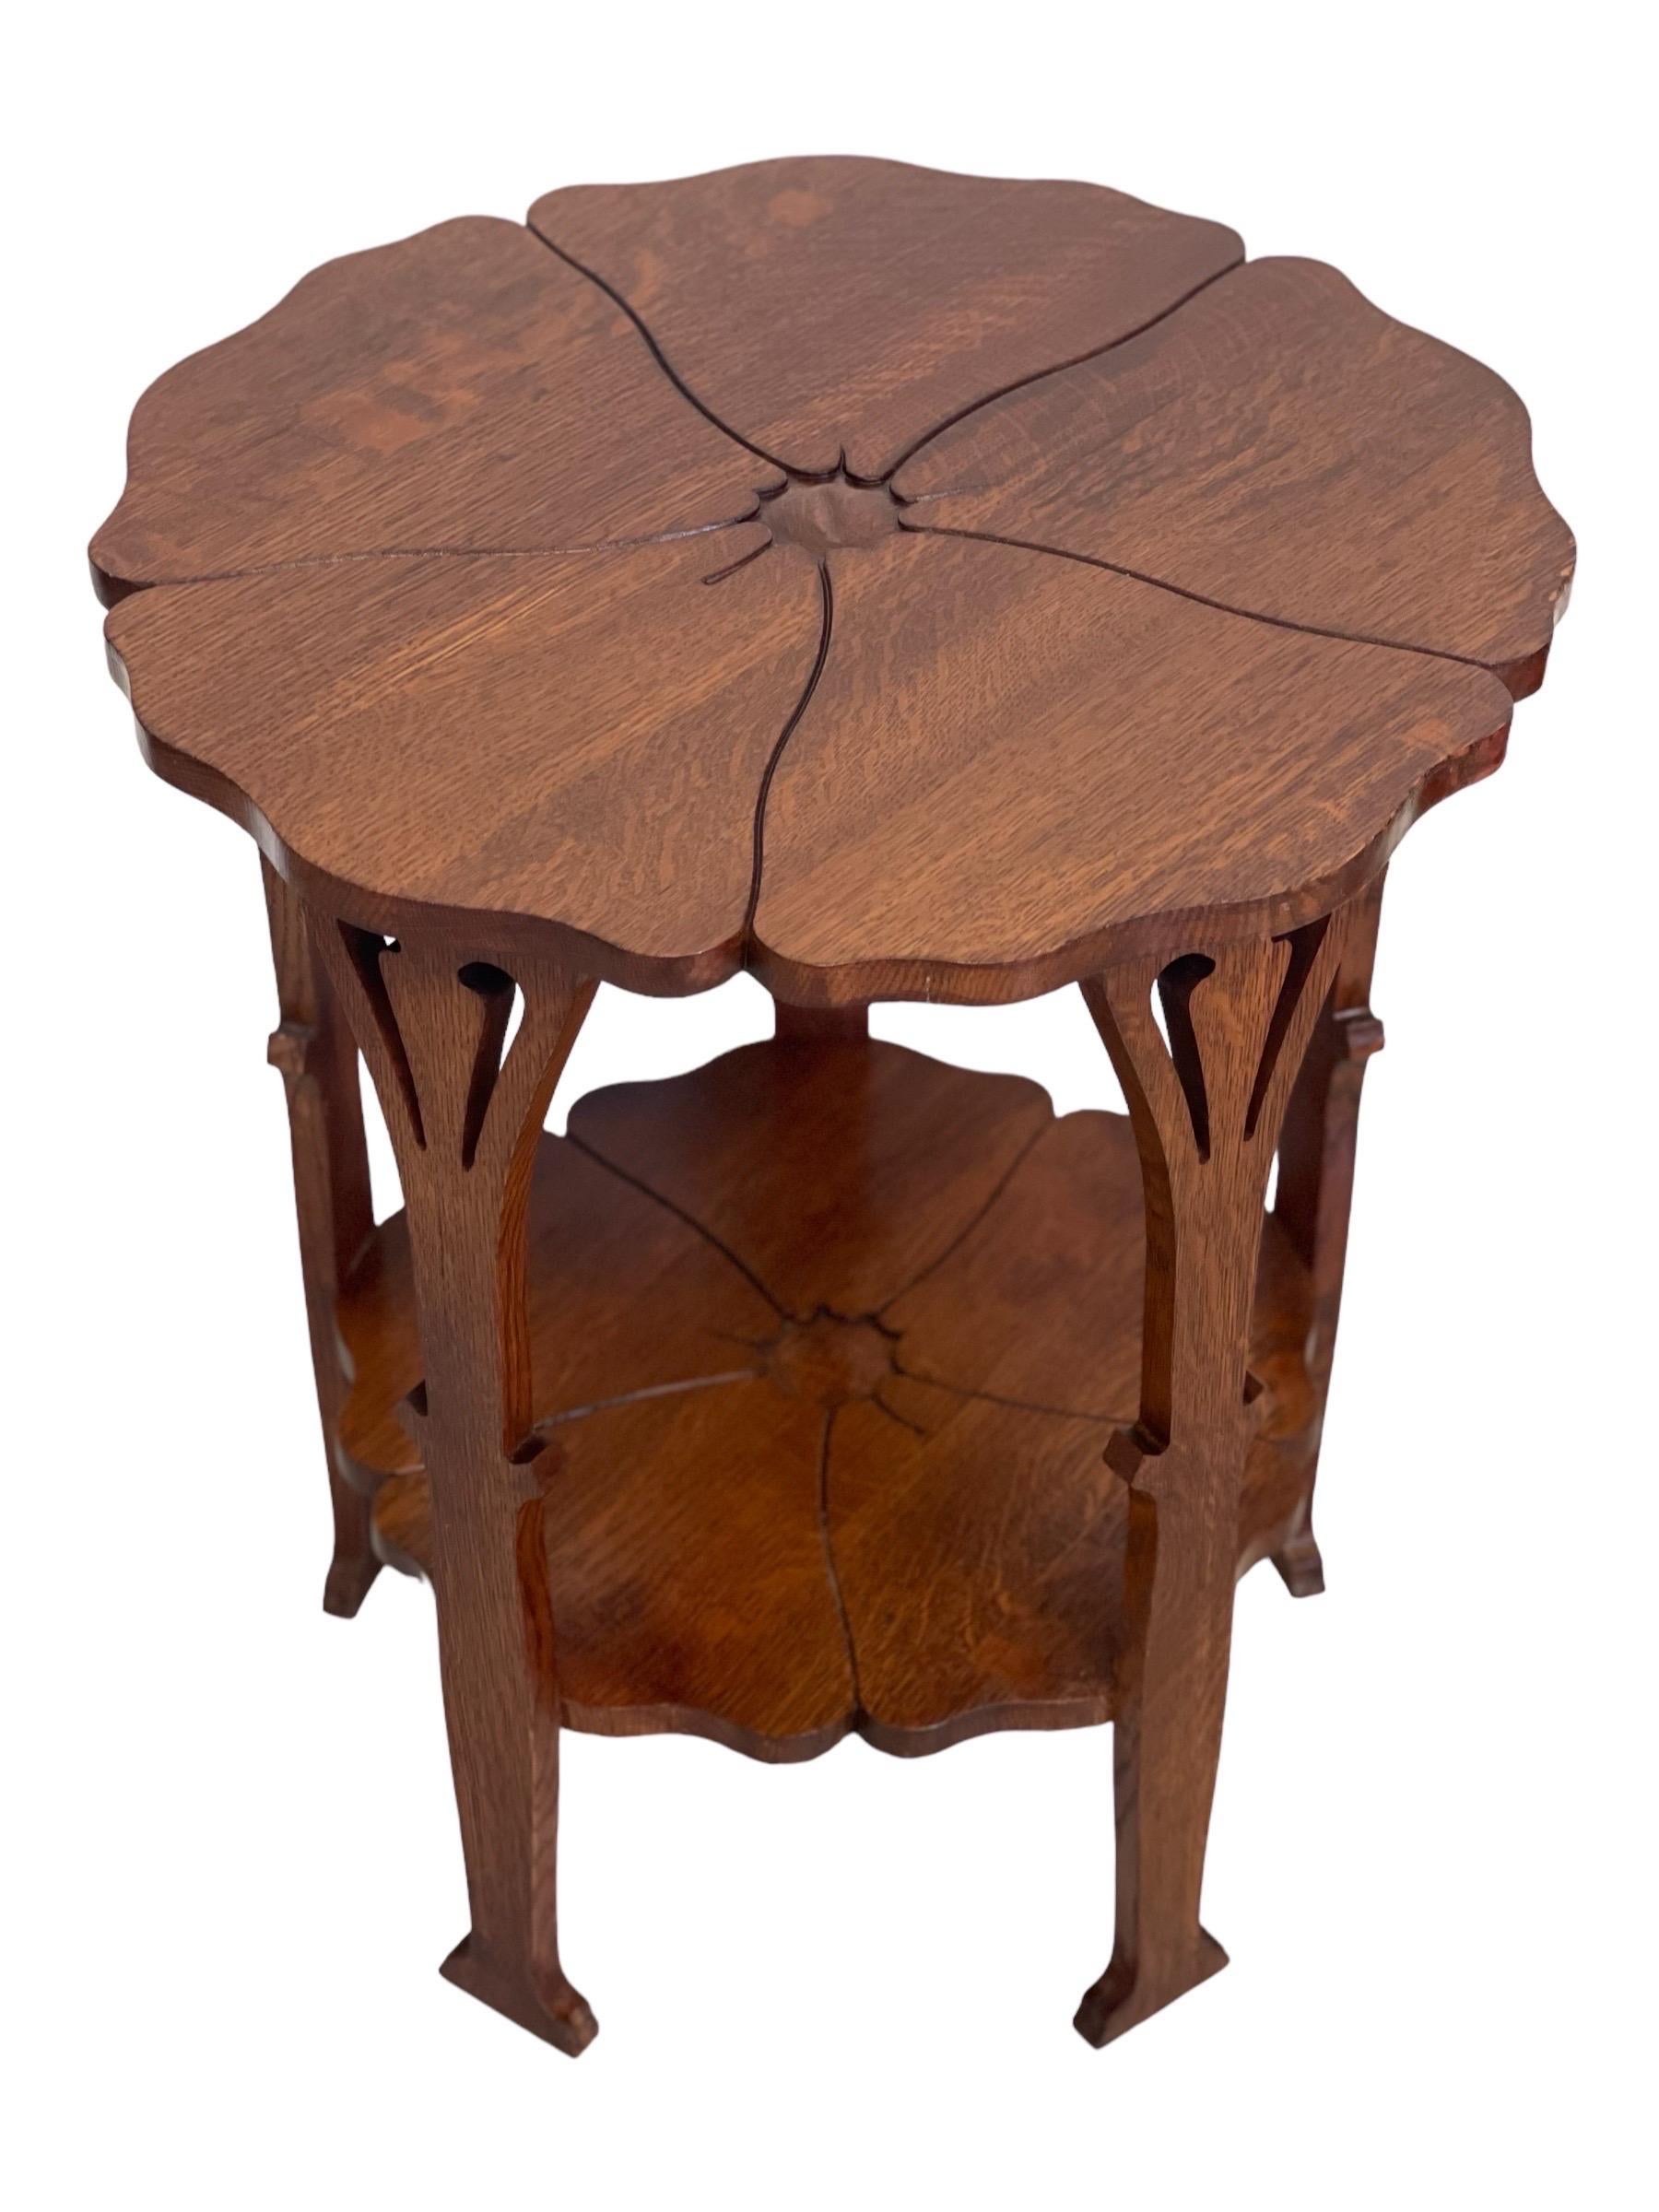 Dieser filigran gestaltete Gustave Stickley Poppy Table wurde nur für kurze Zeit, ab 1900, produziert. Das Design verrät die englischen Wurzeln der aufblühenden amerikanischen Arts-and-Crafts-Bewegung. Der Mohnblumentisch ist eines von mehreren